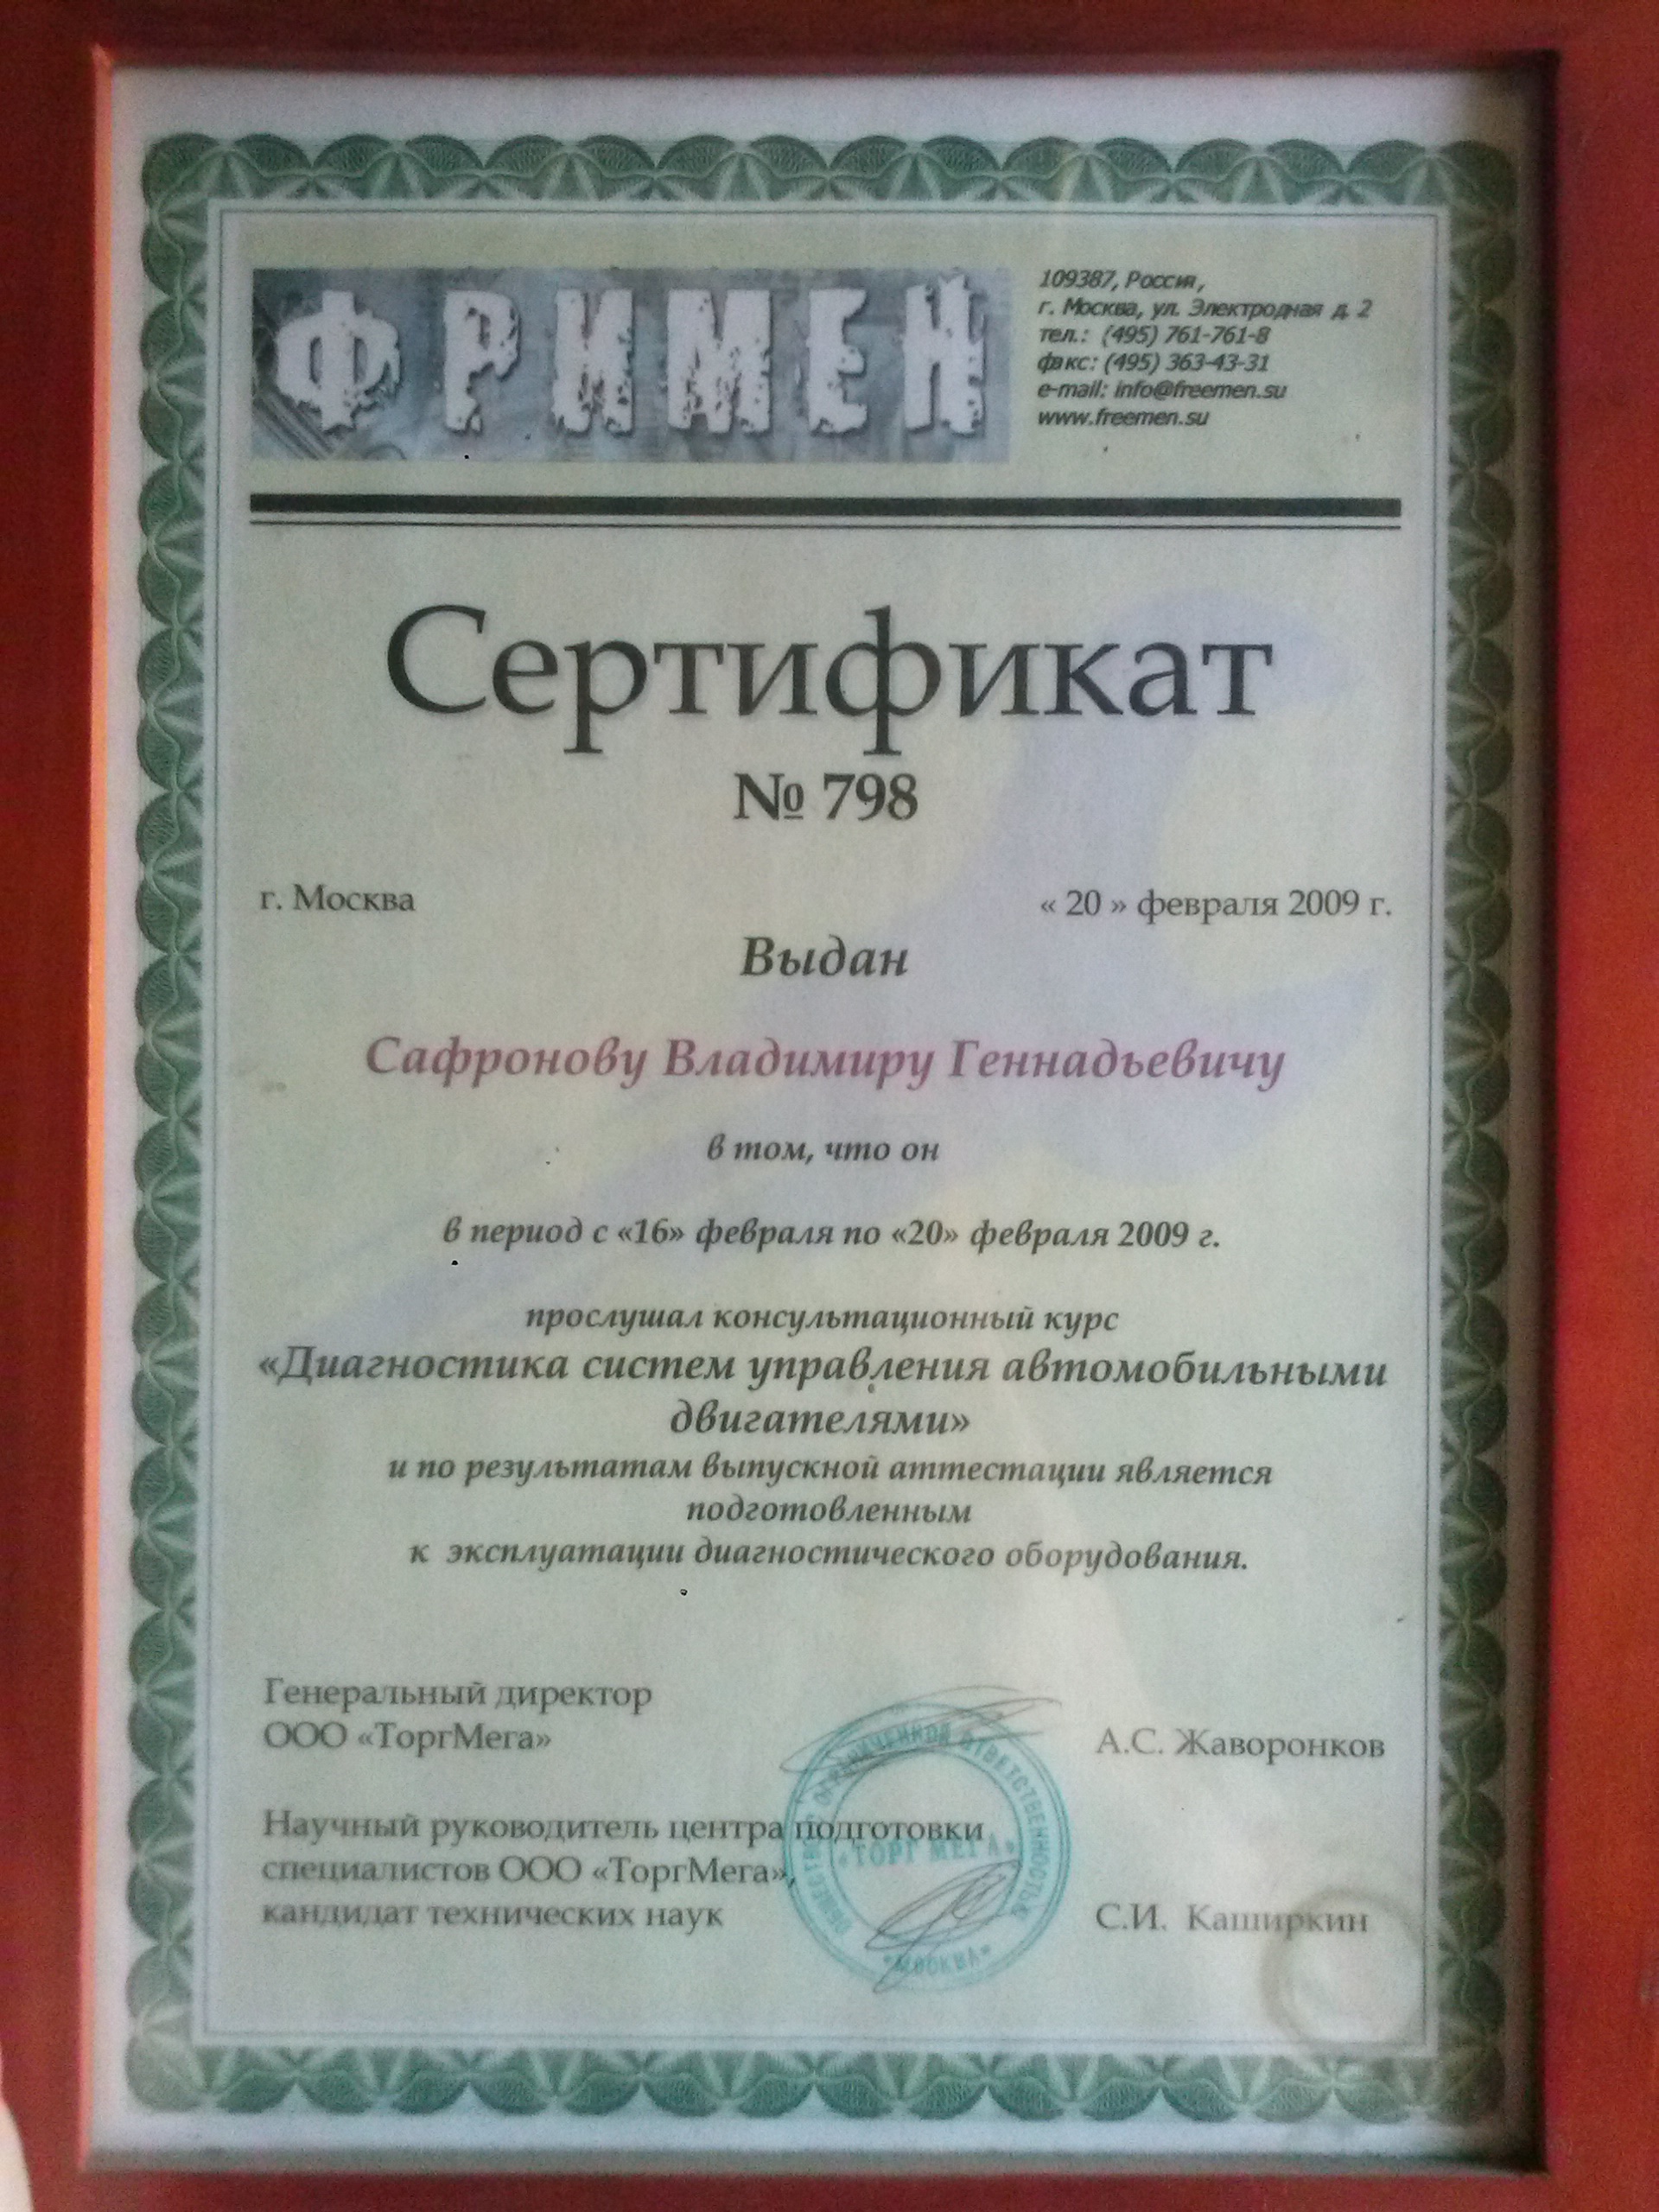 Сертификат диагноста.jpg